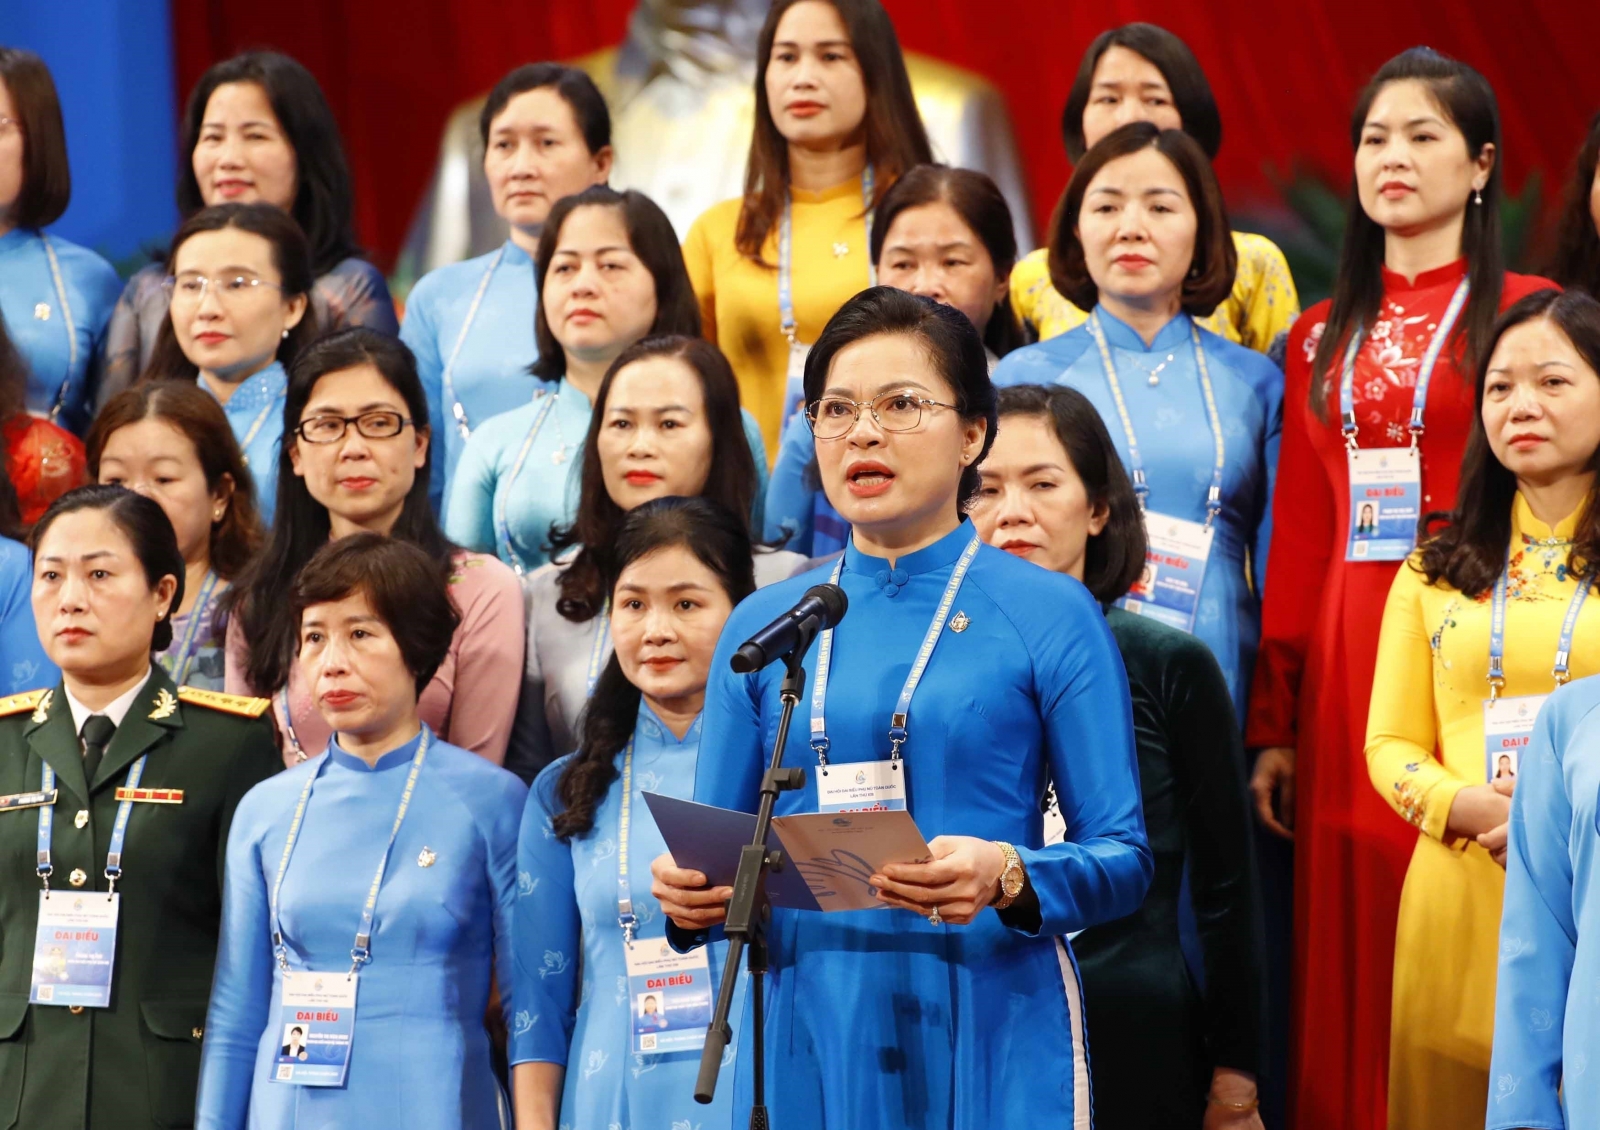 Tỉ lệ phụ nữ làm lãnh đạo, quản lý ở Việt Nam